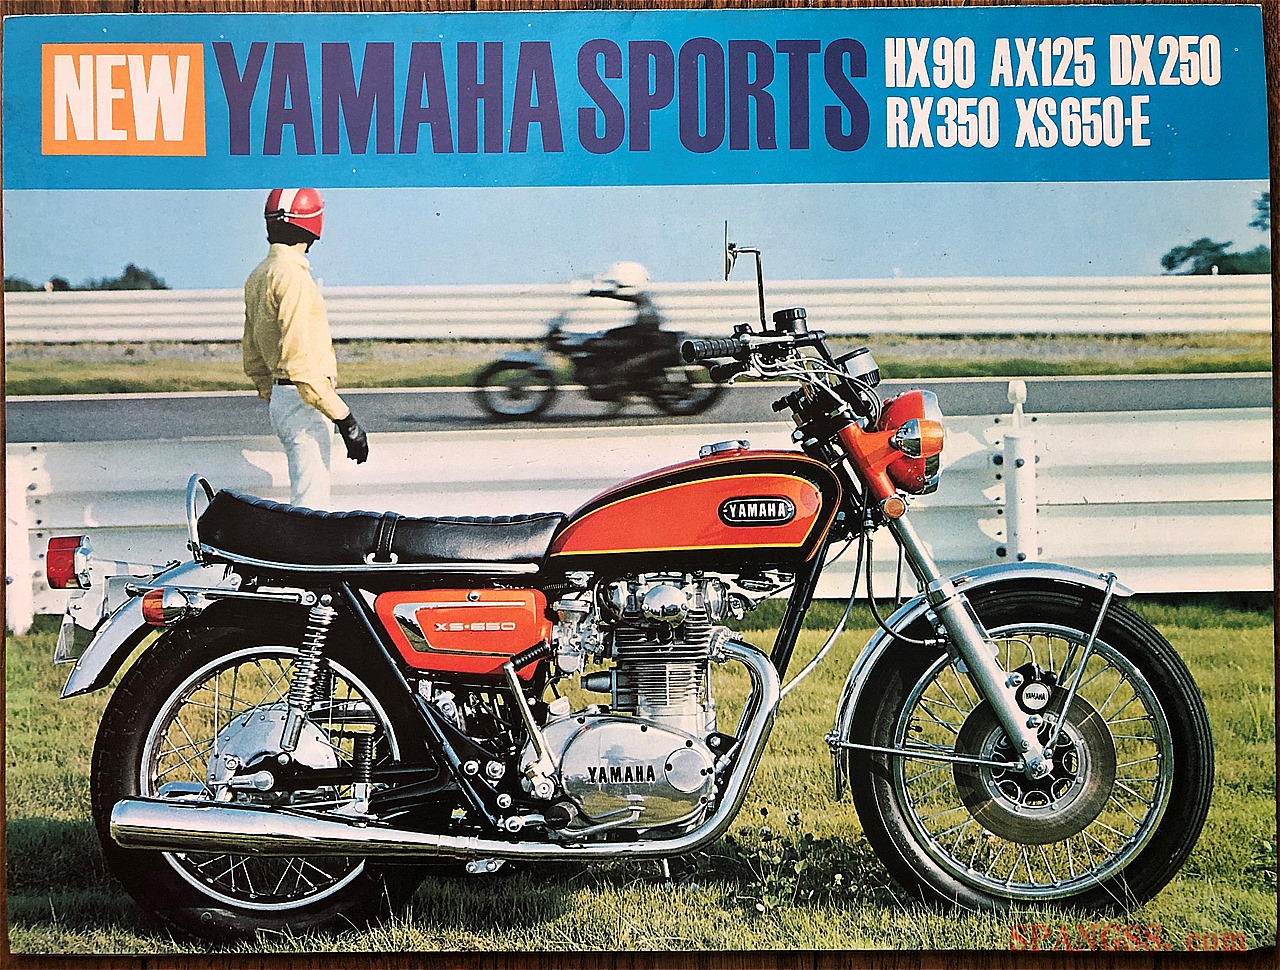 旧車 絶版車 1970年代初頭 ヤマハは 4ストも2ストもスポーツモデルの Xシリーズ化 で大攻勢 幾度も車名変更された車両もあった ライフスタイルのwebメディア Spangss スパングス